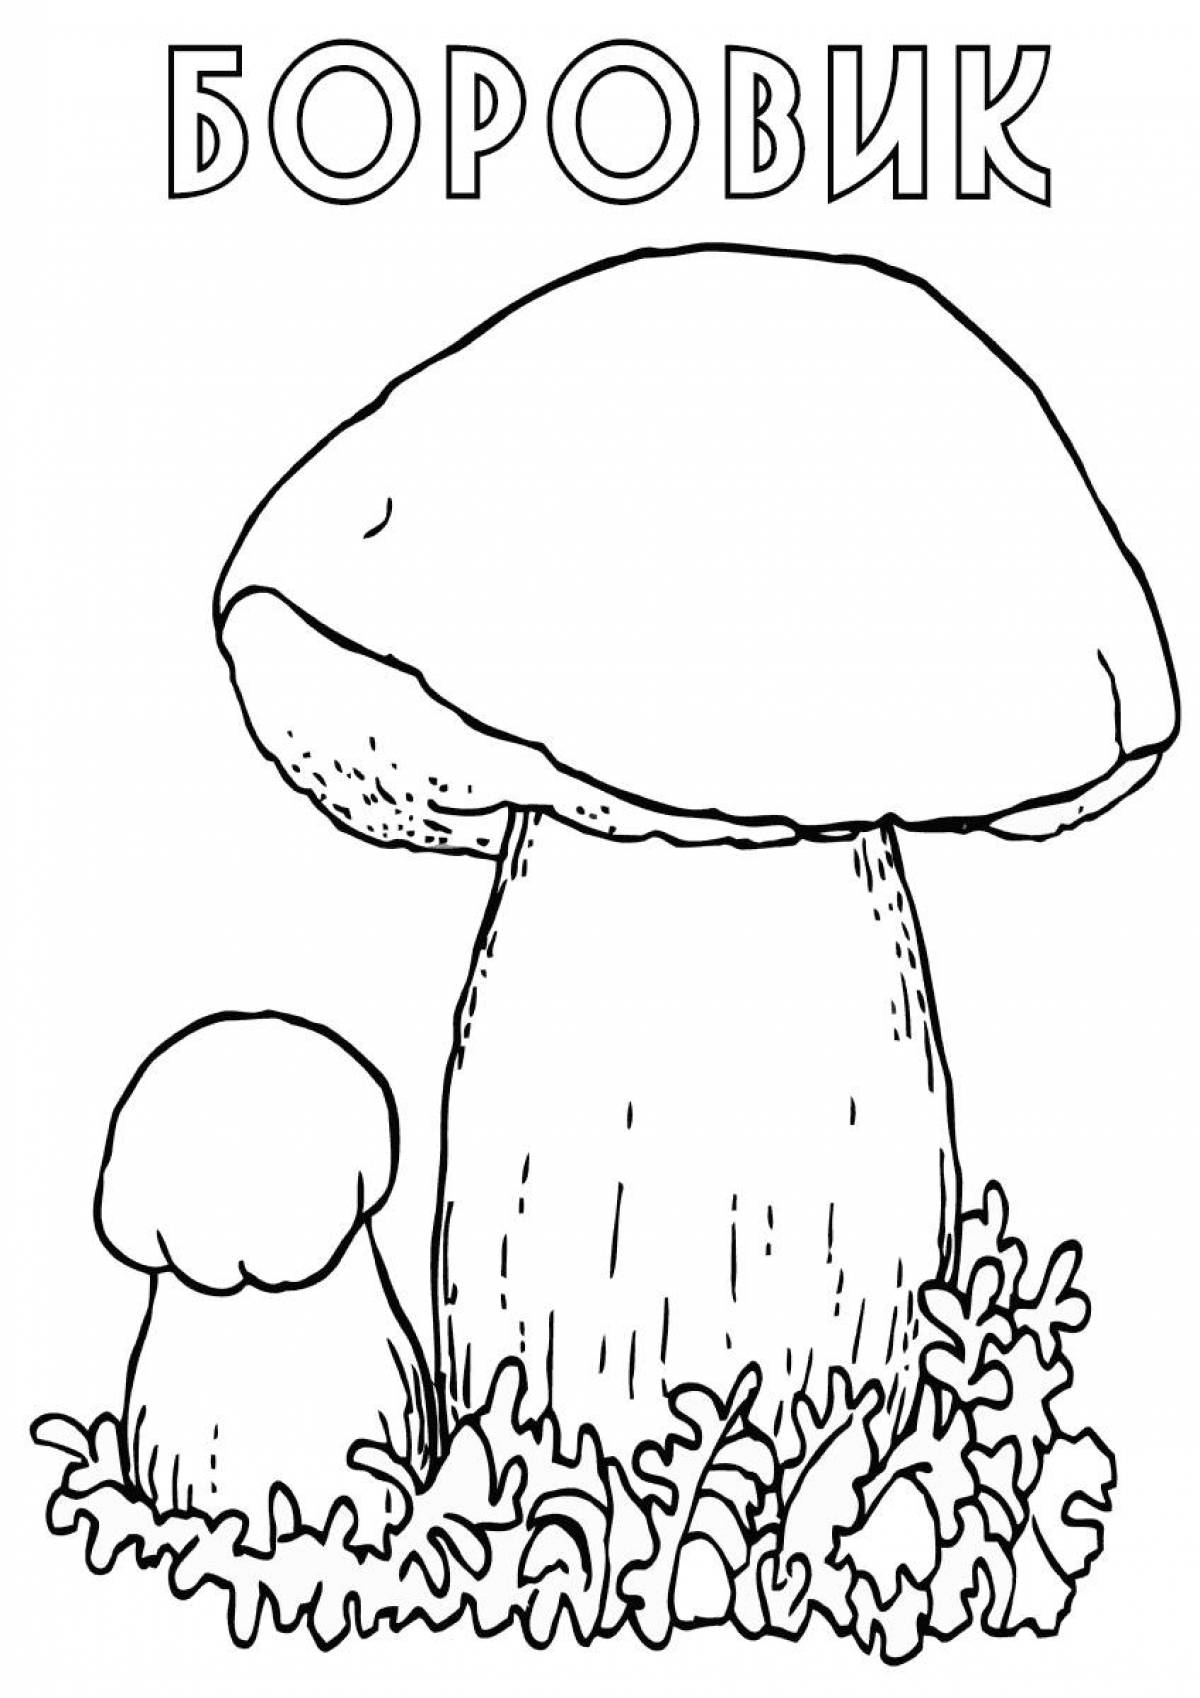 Яркая раскраска грибов для детей